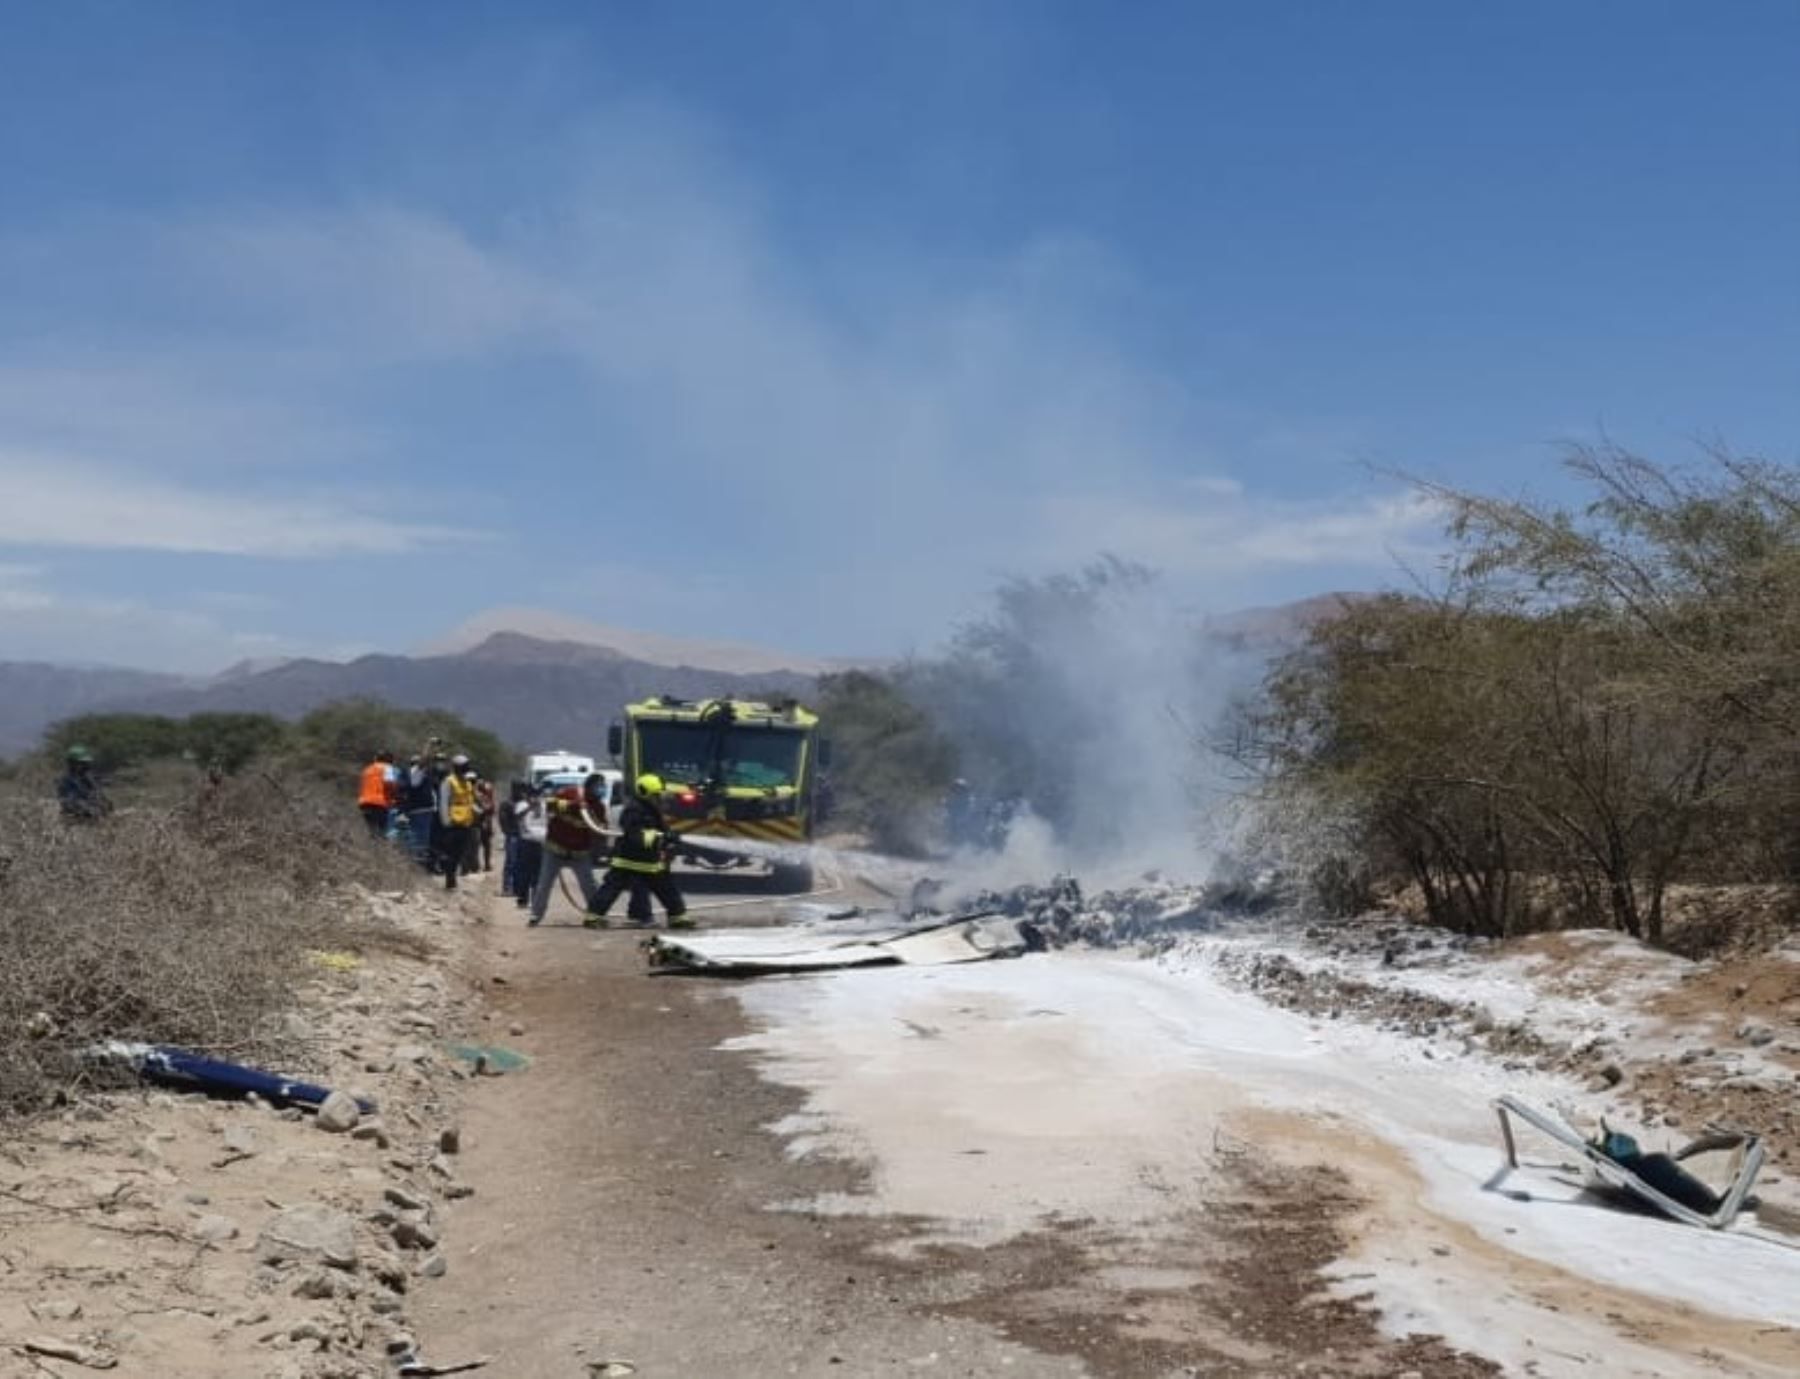 7 fallecidos tras accidente de una avioneta en Nazca, Perú